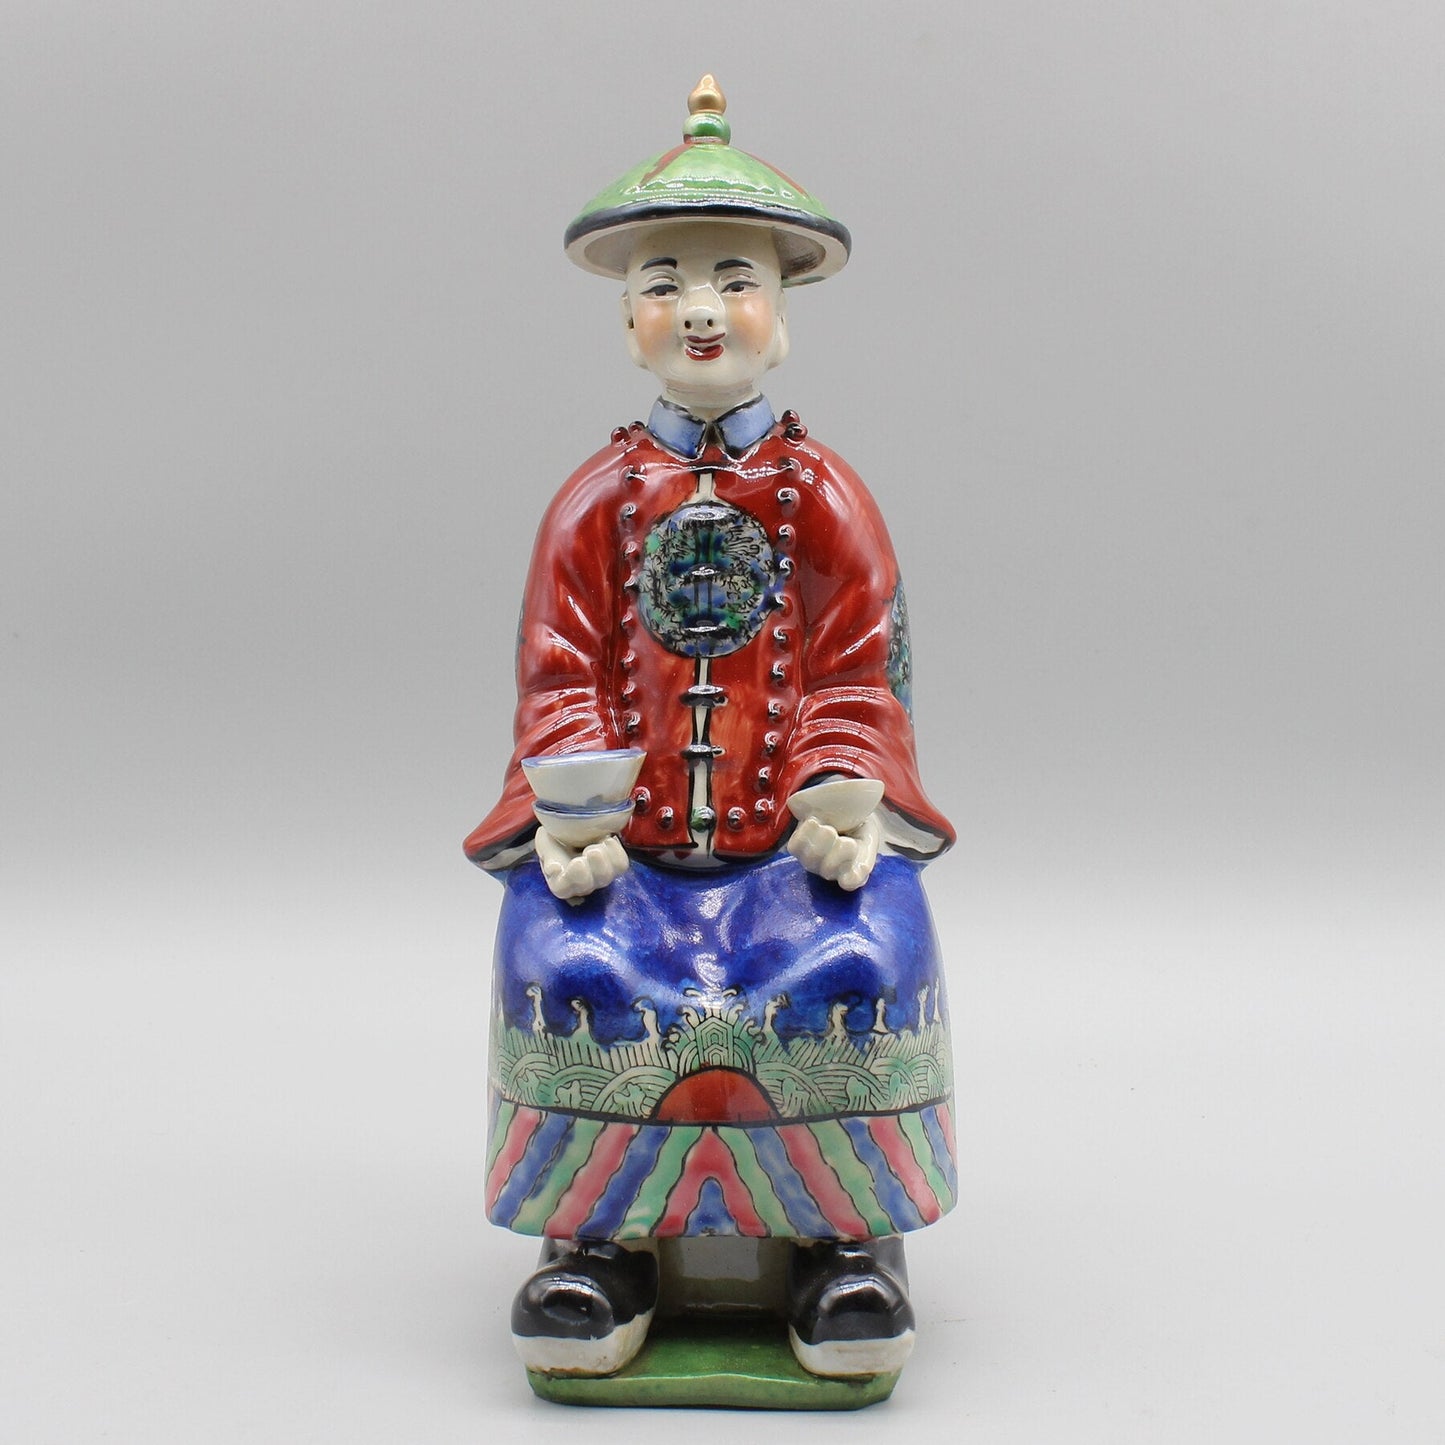 Seramik Çin İmparator Heykeli, El Boyalı Seramik Heykelcik, Renkli Porselen, Ev Dekorasyonu